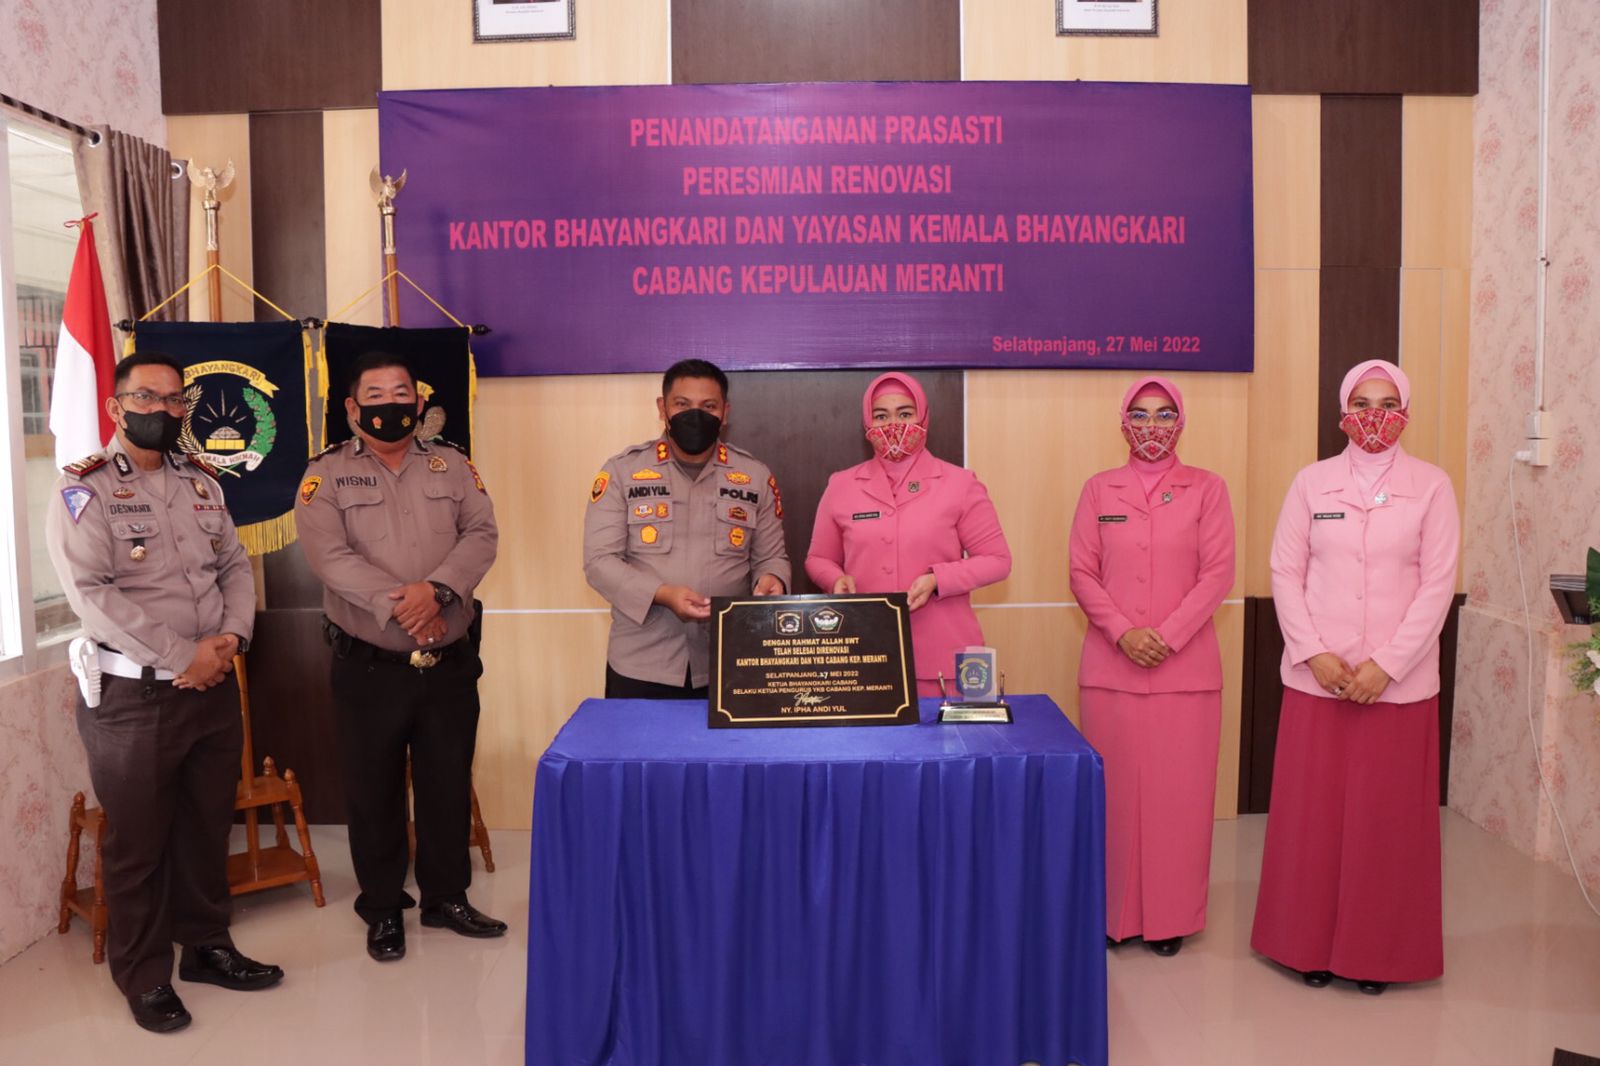 Kapolres Resmikan Renovasi Kantor dan Yayasan Kemala Bhayangkari Cabang Meranti